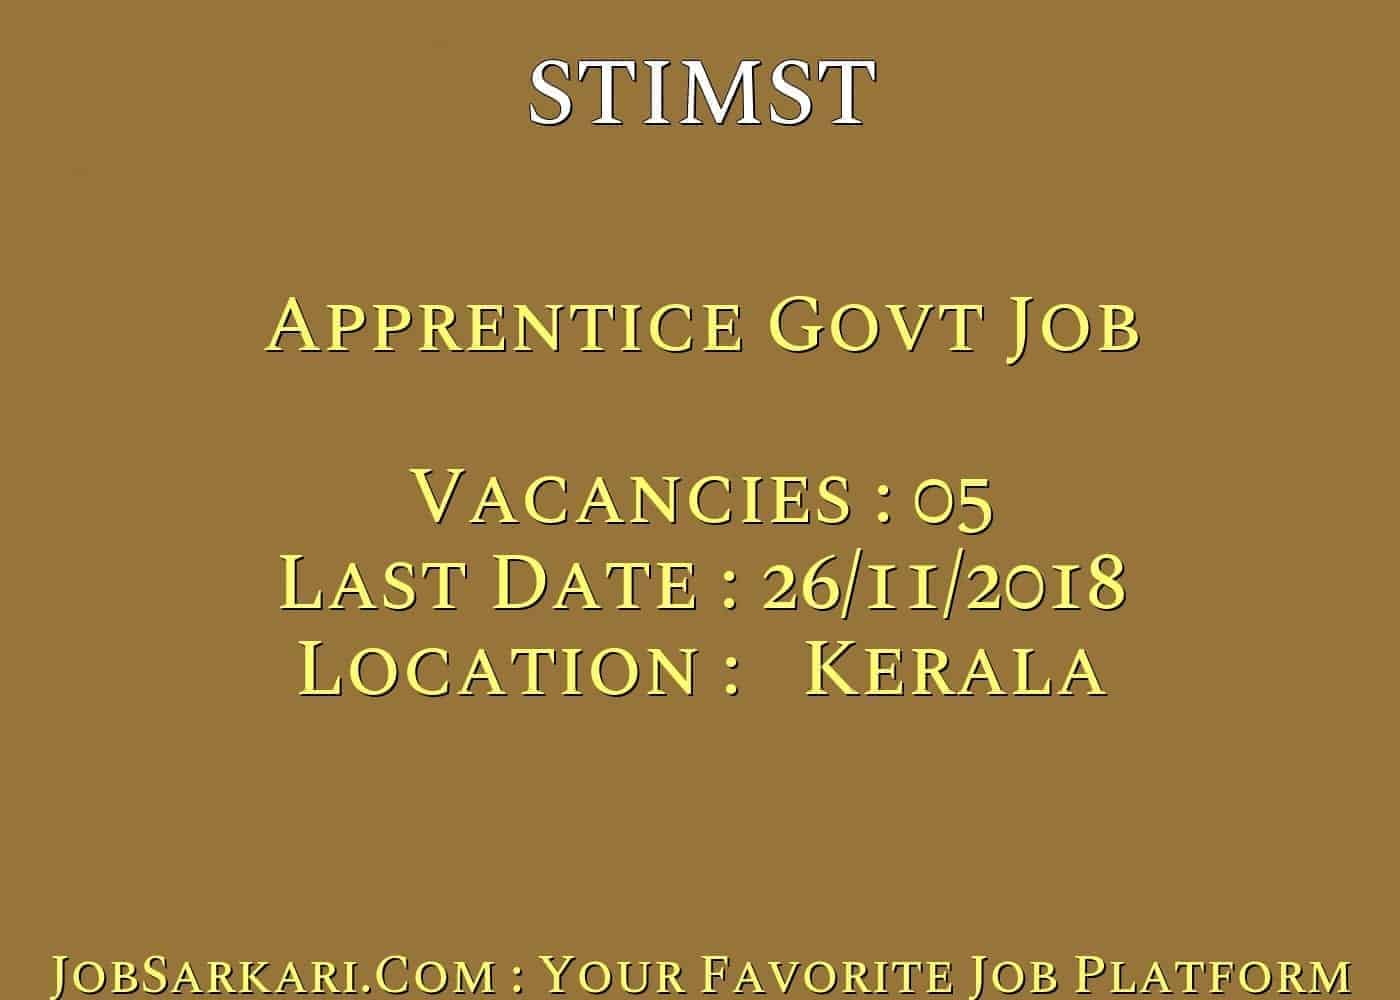 STIMST Recruitment 2018 For Apprentice Govt Job